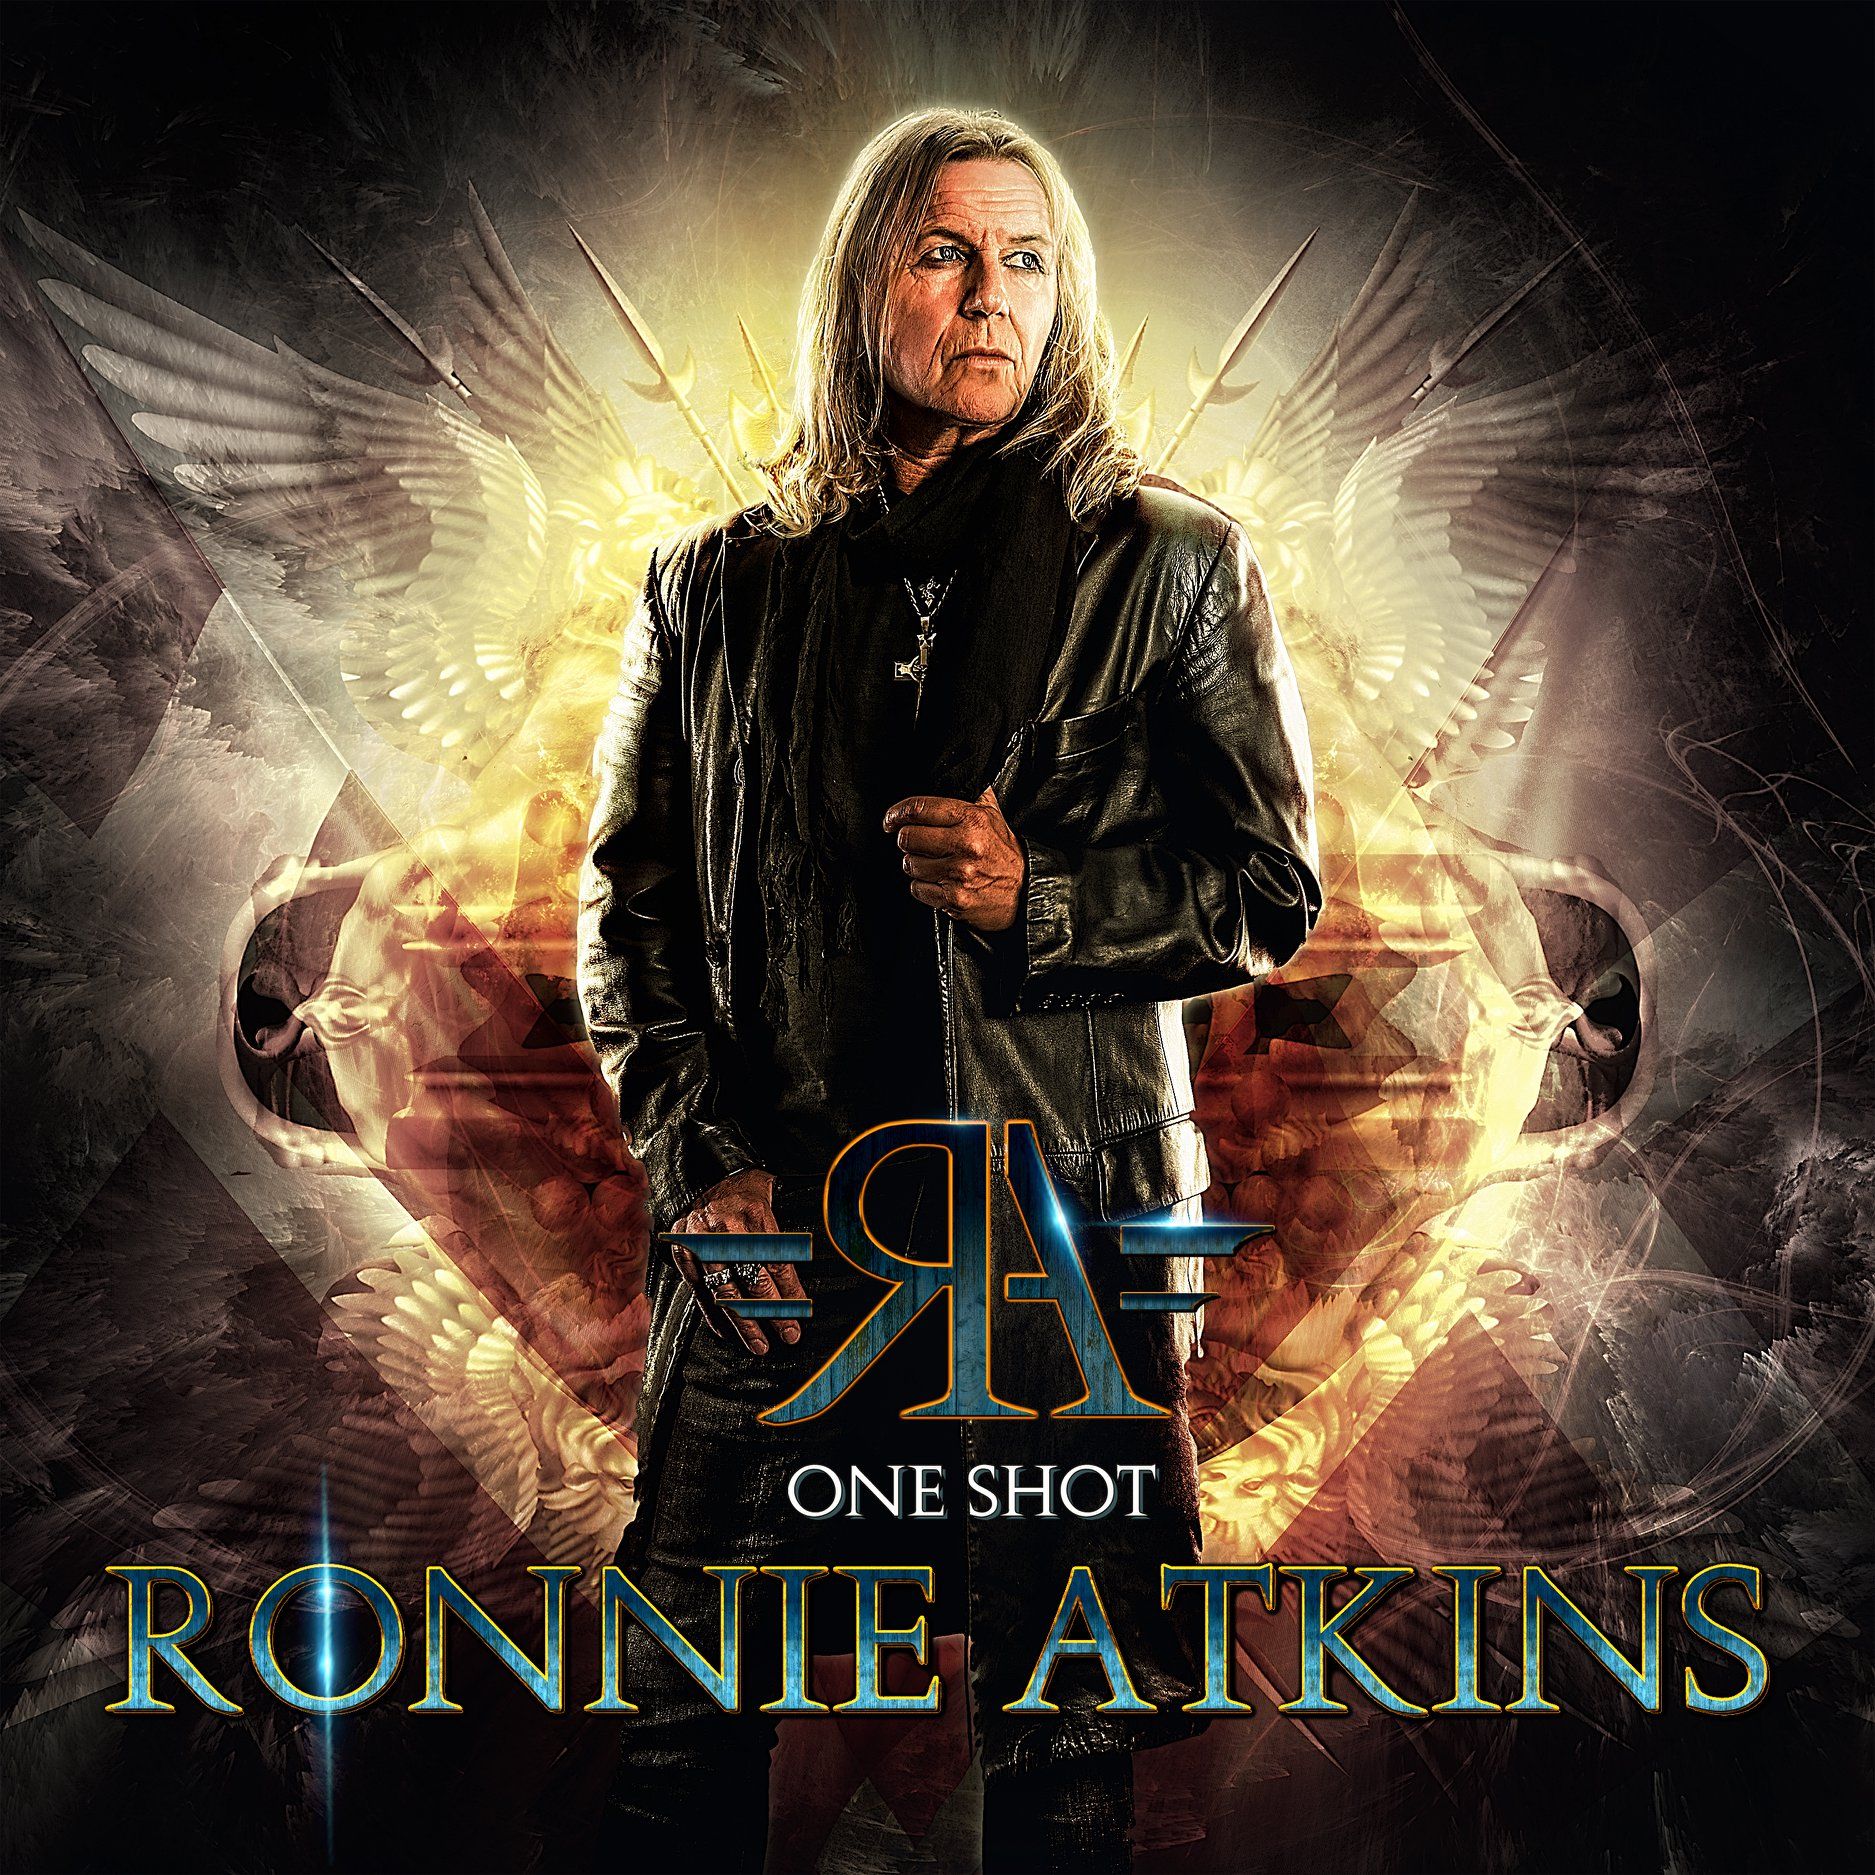 'Real'-Single von Ronnie Atkins' "One Shot"-Album veröffentlicht